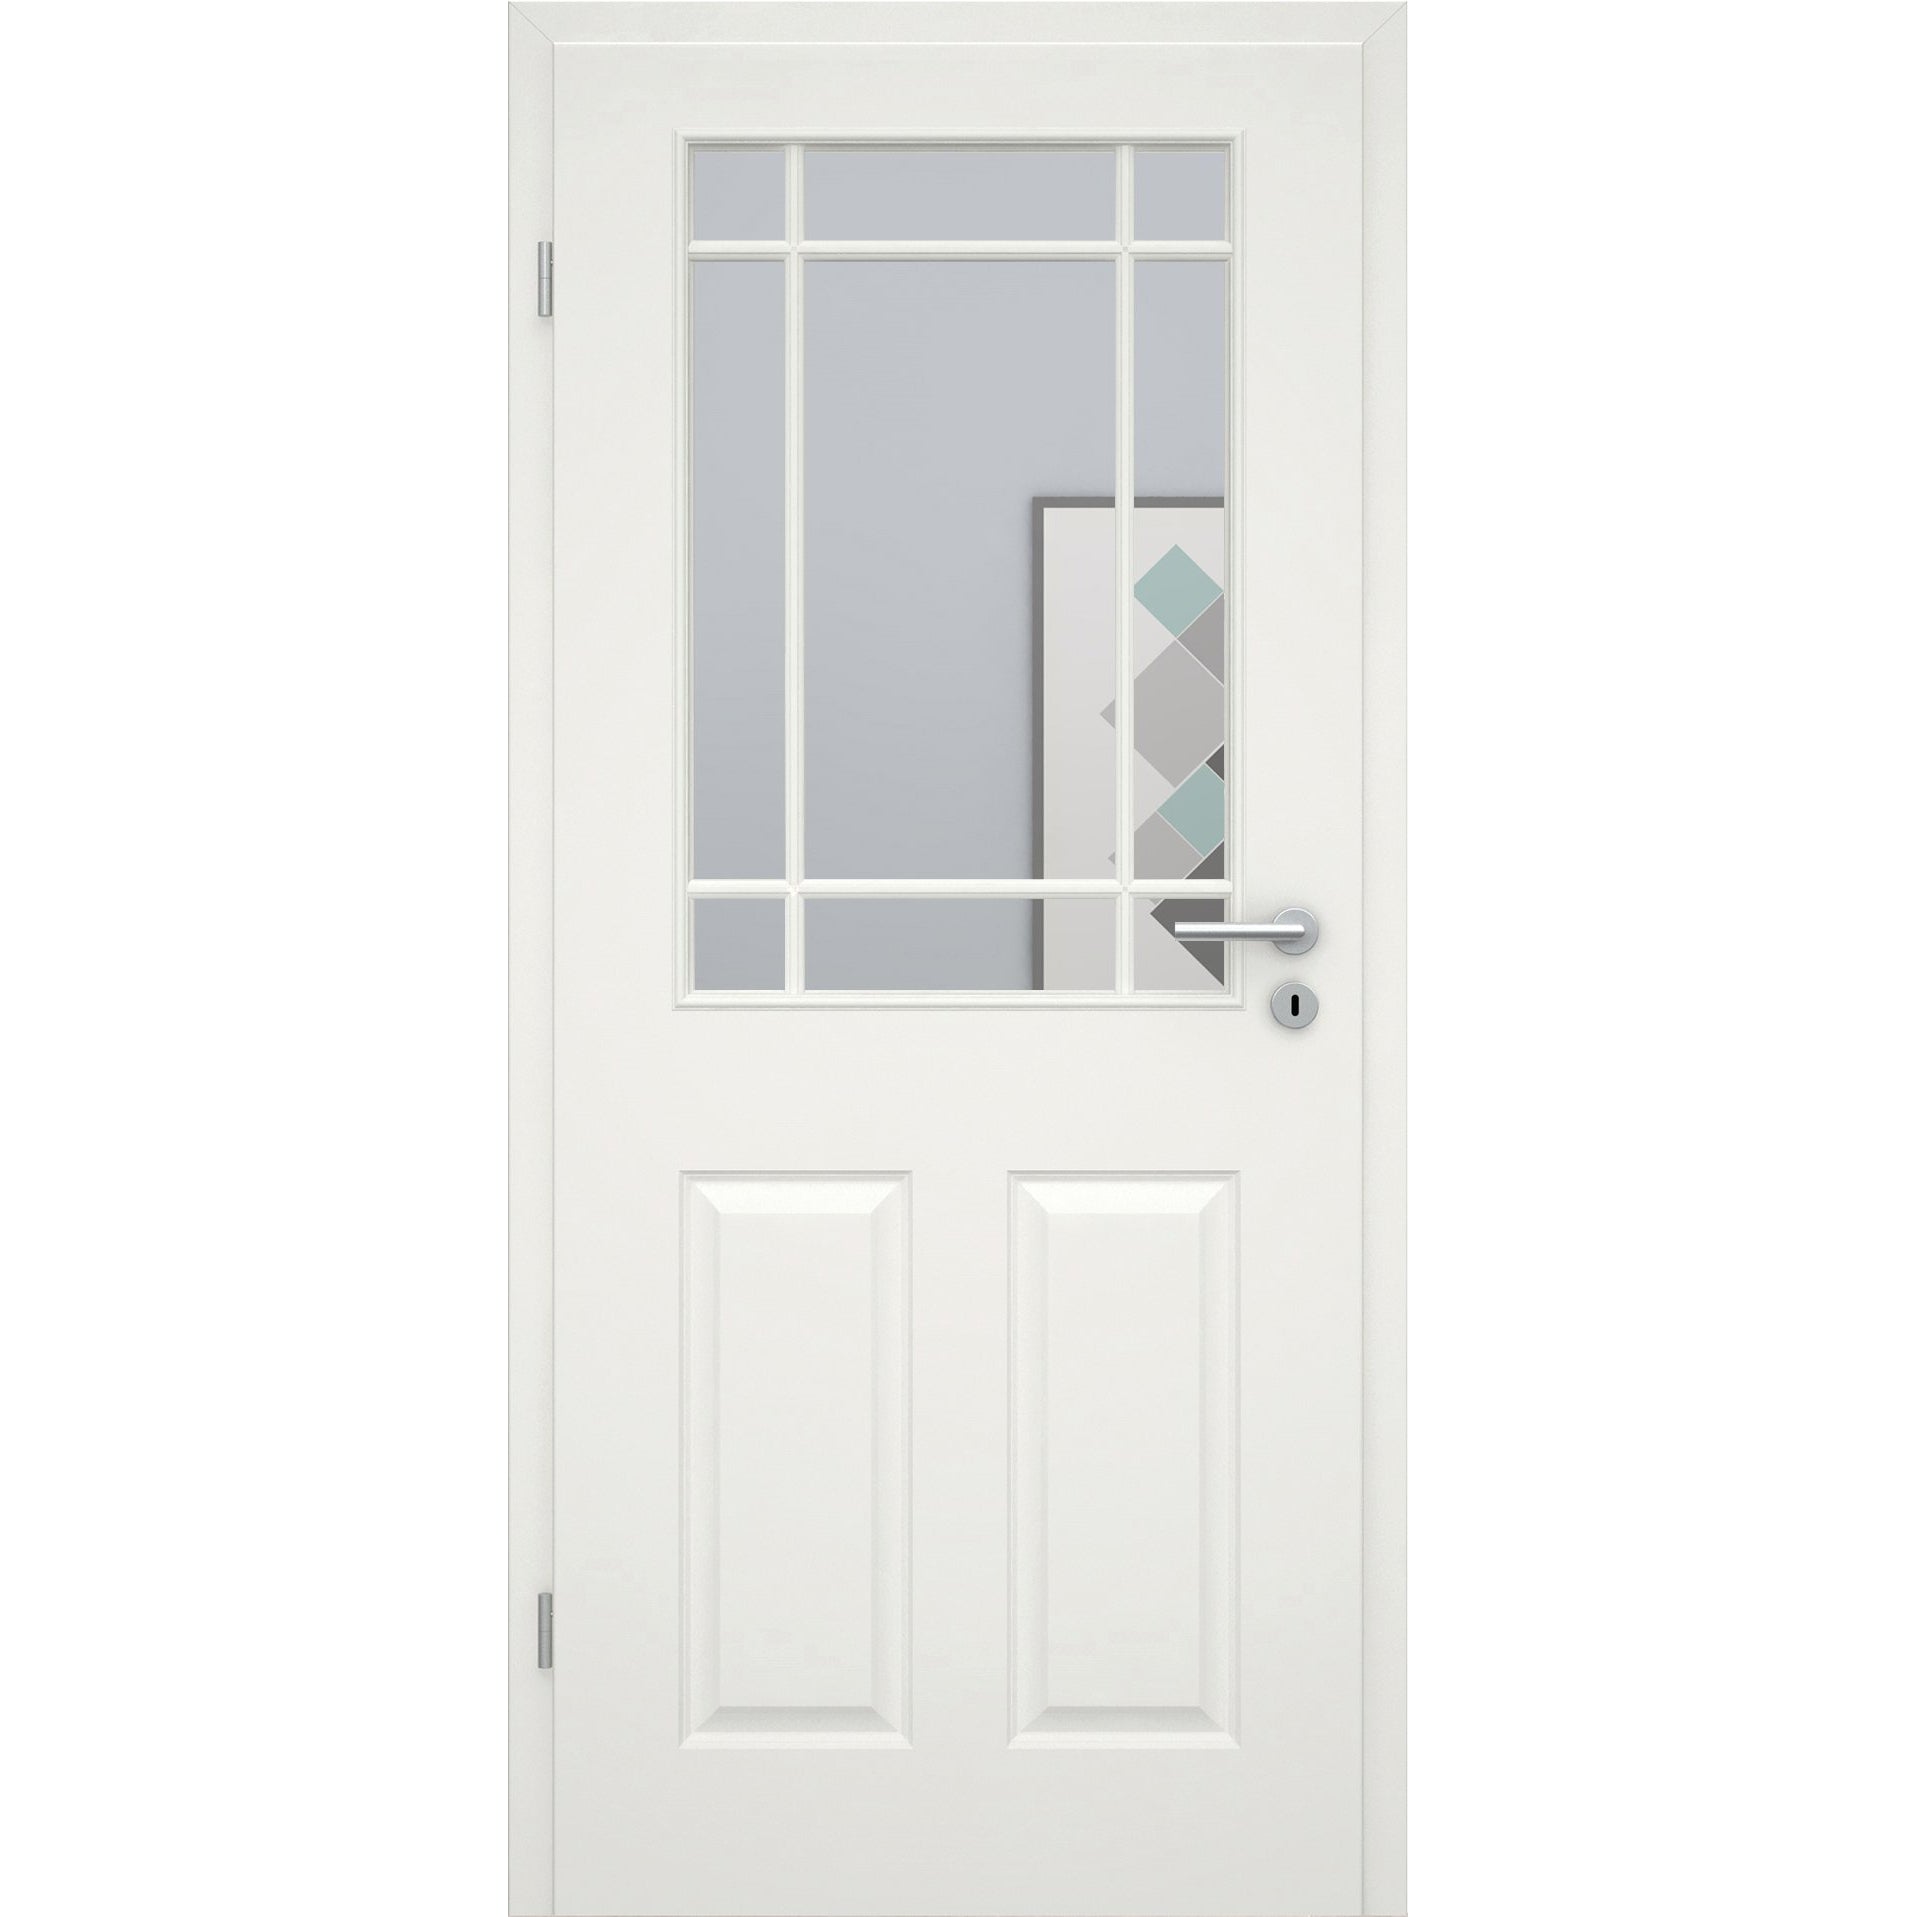 Zimmertür mit Lichtausschnitt mit Sprossenrahmen klassisch soft-weiß 4 Kassetten Rundkante - Modell Stiltür K41LASPK